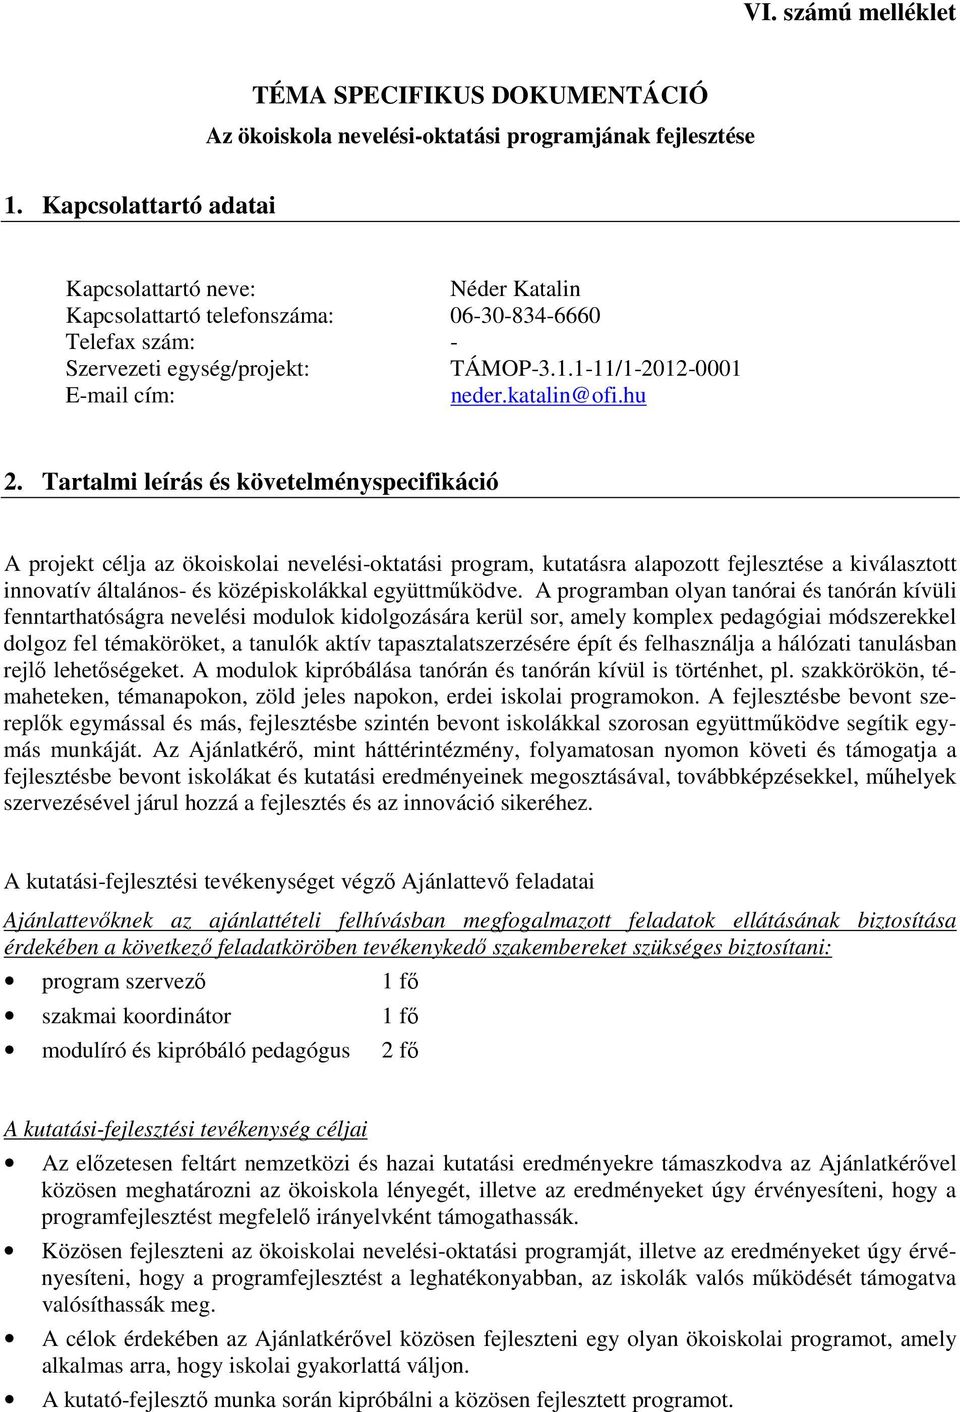 - Szervezeti egység/projekt: TÁMOP-3.1.1-11/1-2012-0001 E-mail cím: neder.katalin@ofi.hu 2.